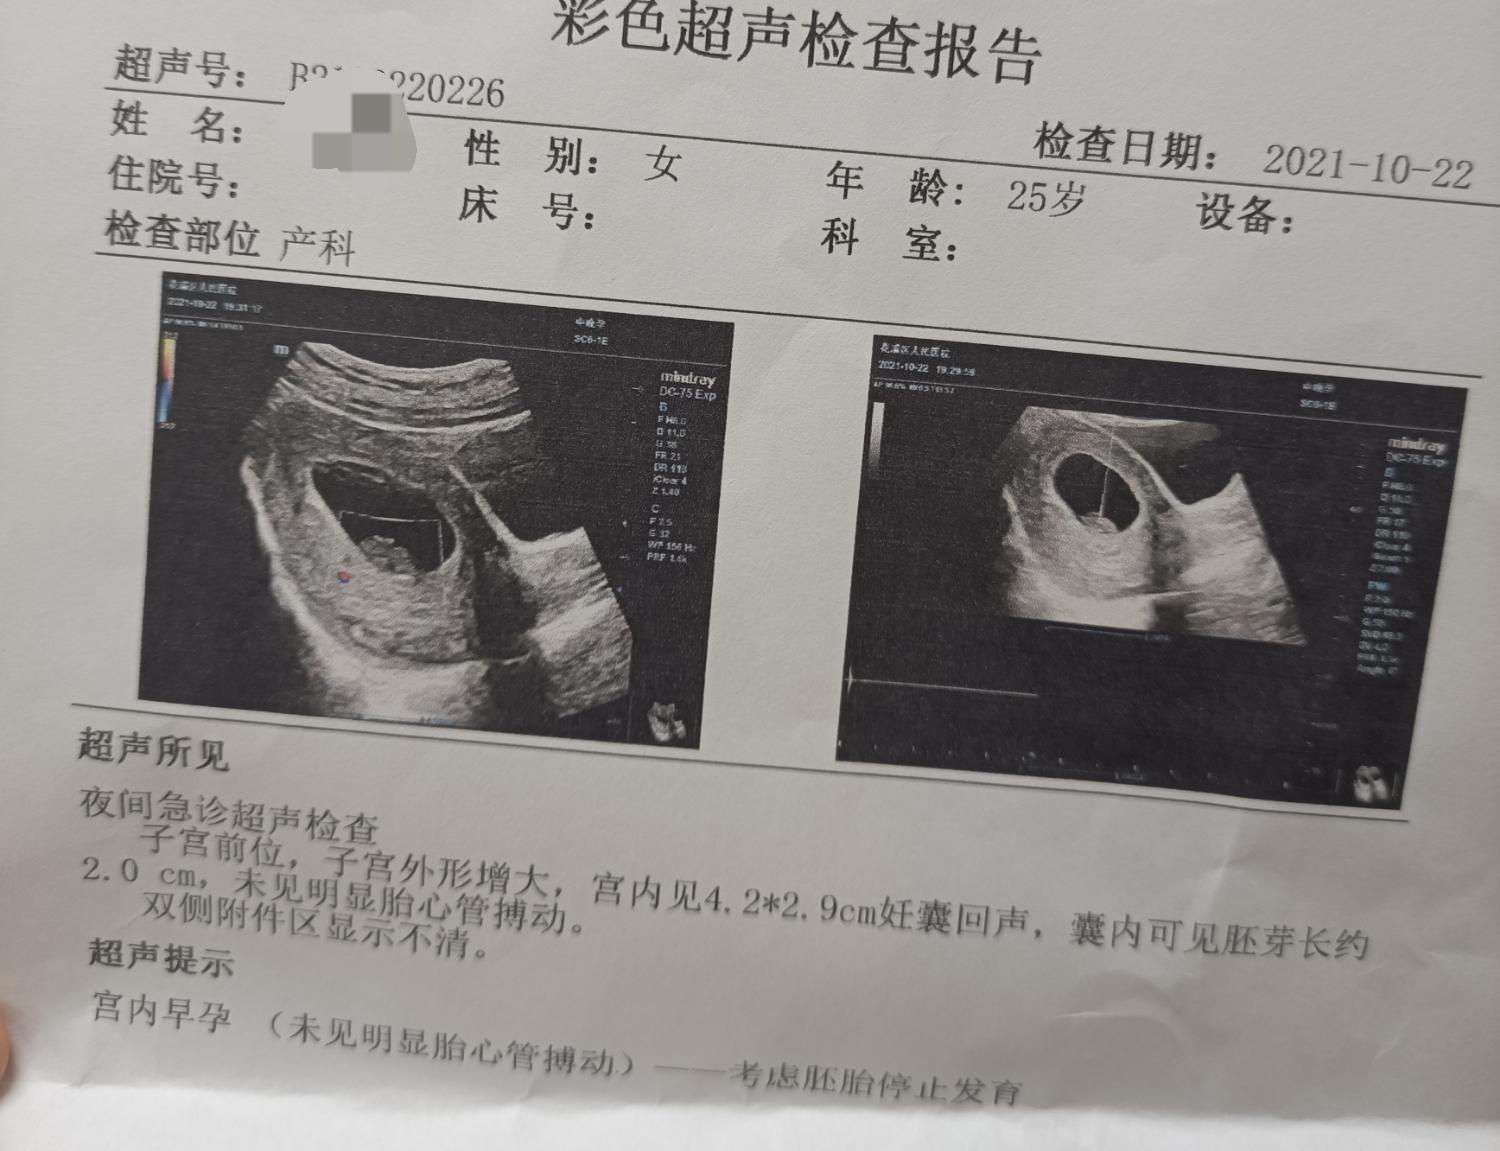 孕九周孕囊偏右侧近宫角最薄处39mm这种情况-好孕妈妈圈-好孕帮